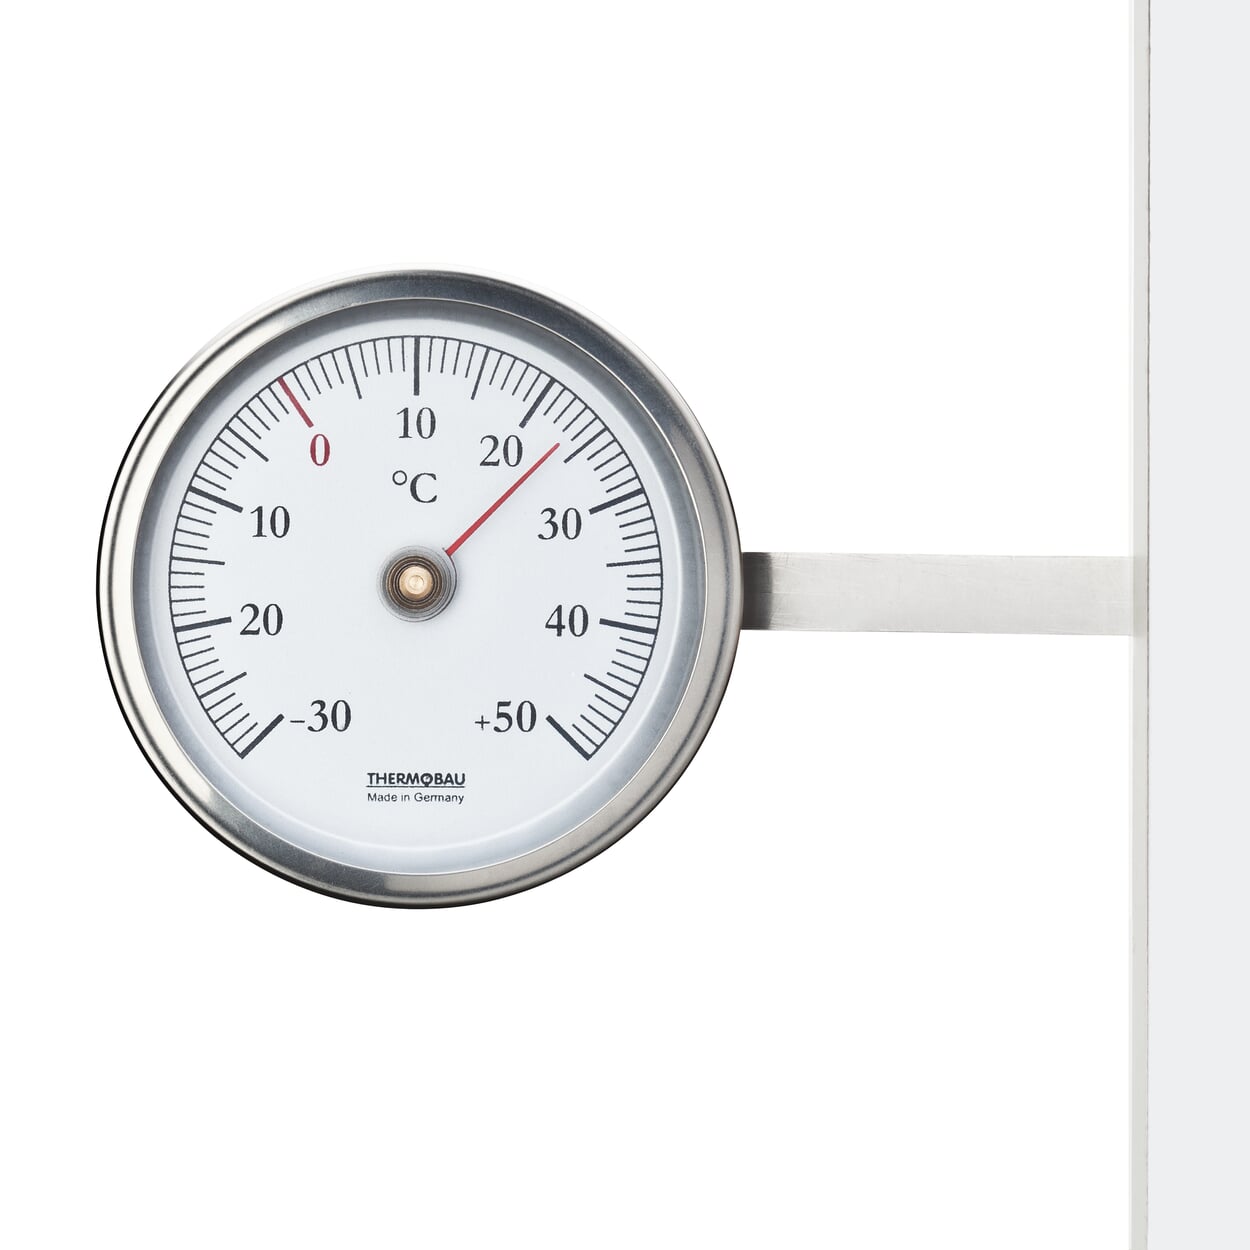 Thermometer edelstahl - Alle Favoriten unter der Menge an verglichenenThermometer edelstahl!